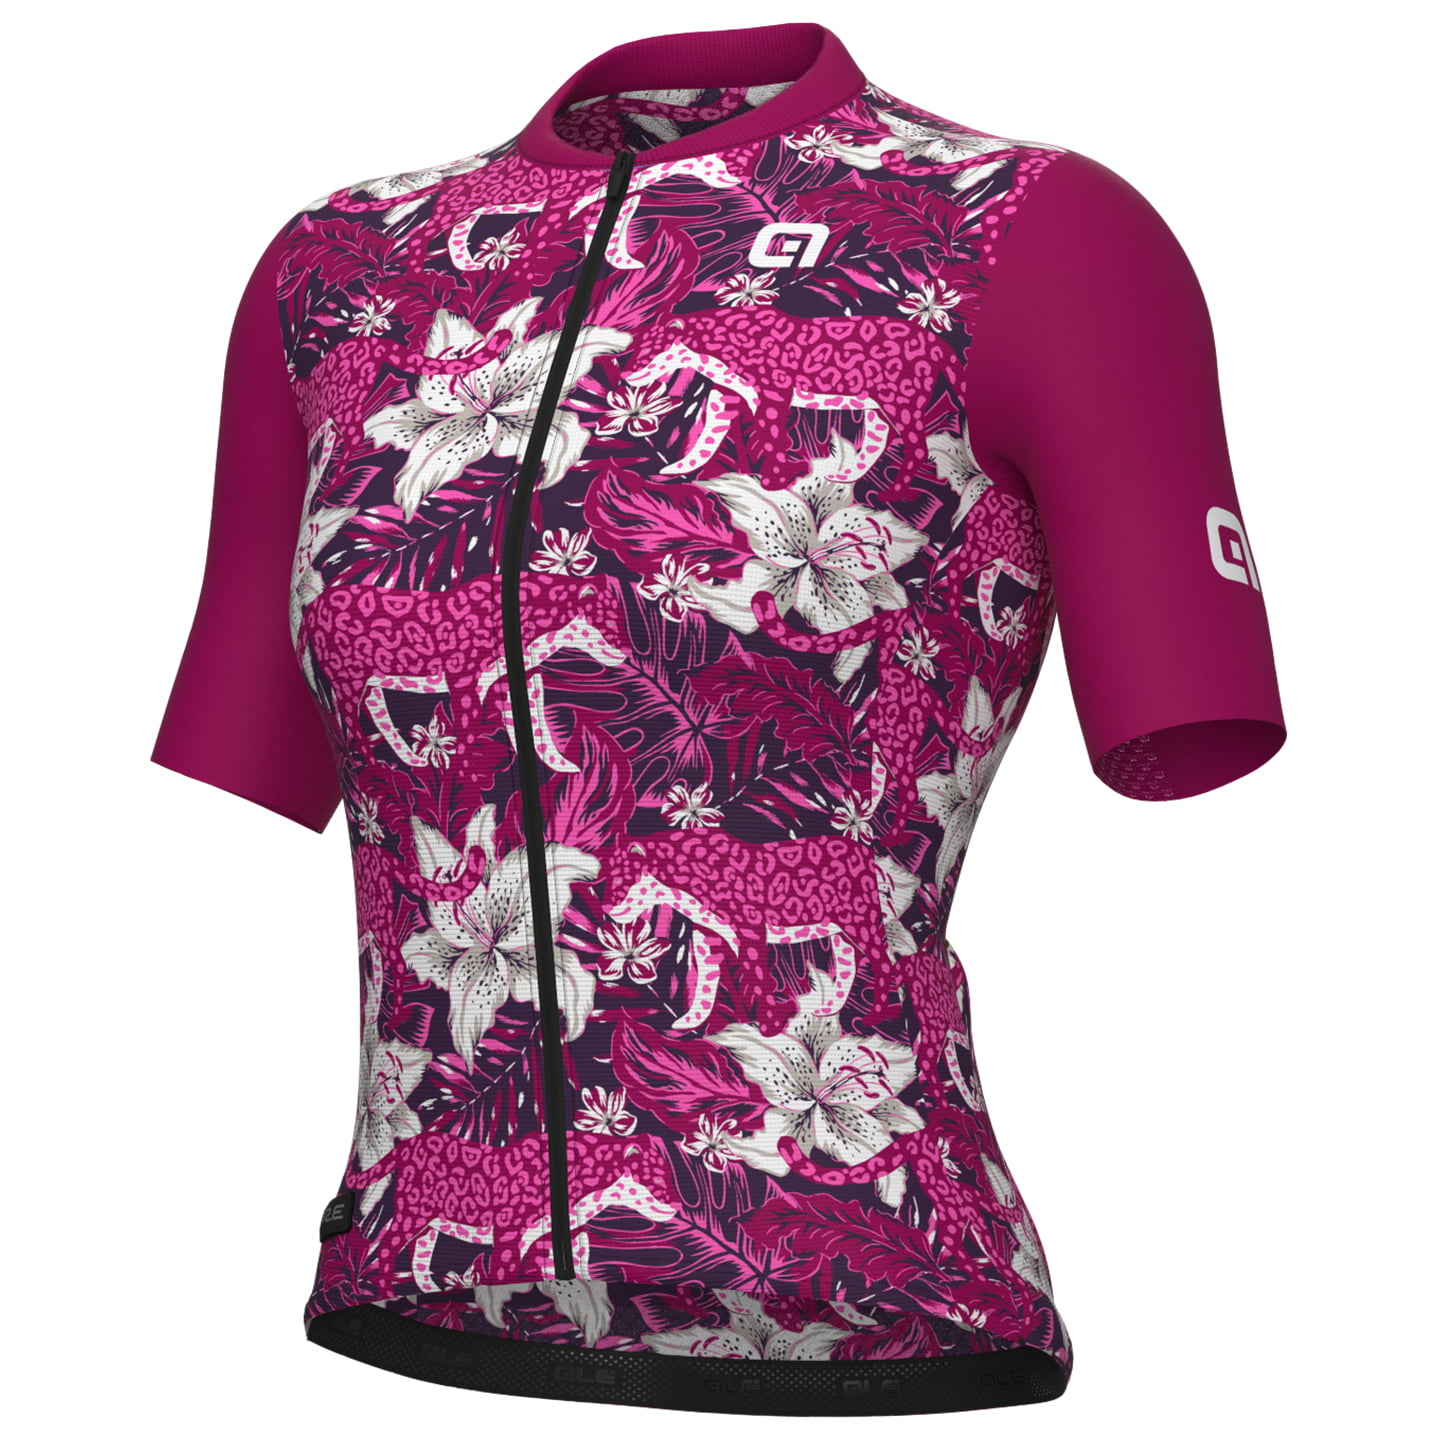 ALE Hibiscus Women’s Jersey Women’s Short Sleeve Jersey, size XL, Cycle jersey, Bike gear